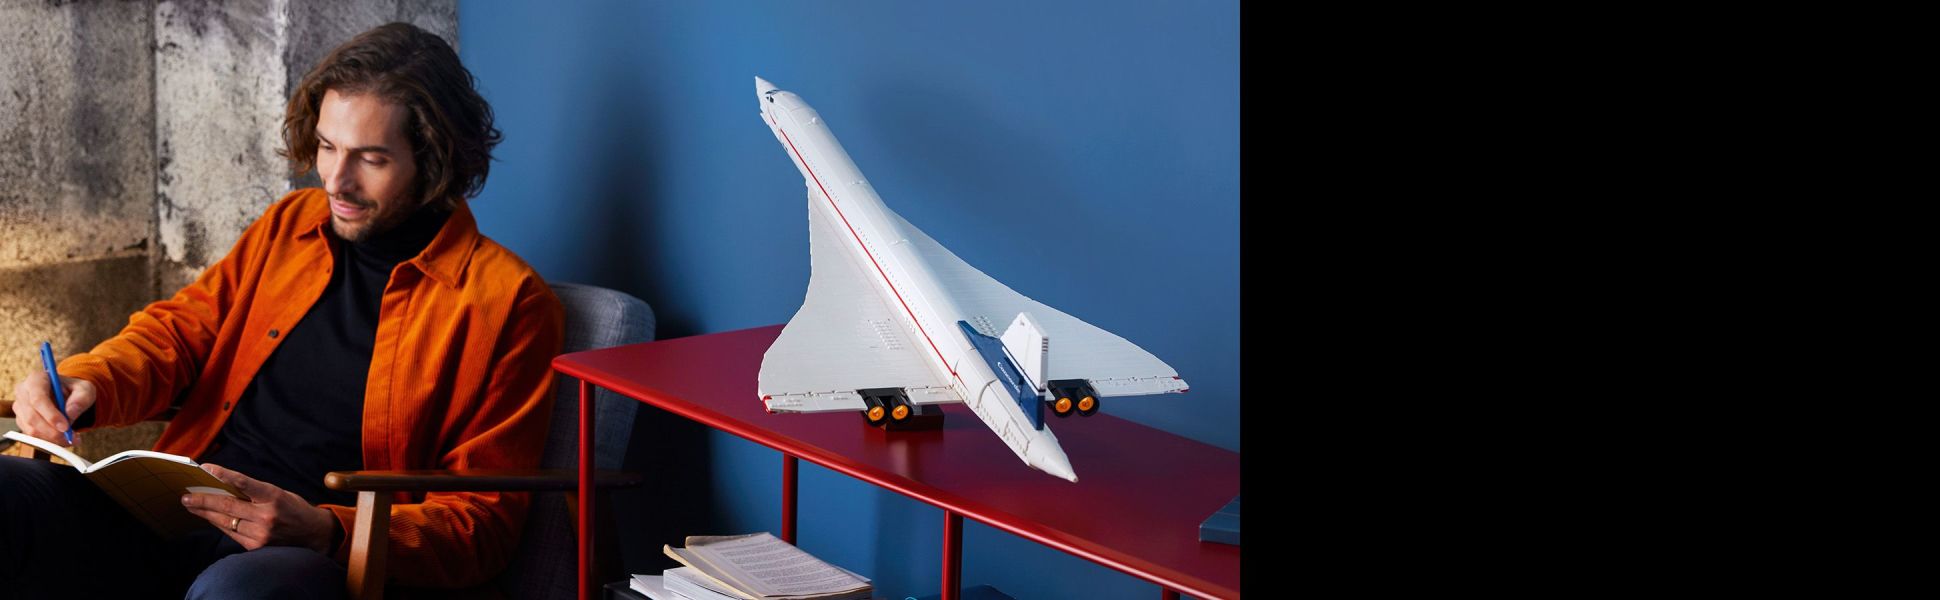 Voliamo con il Concorde Lego